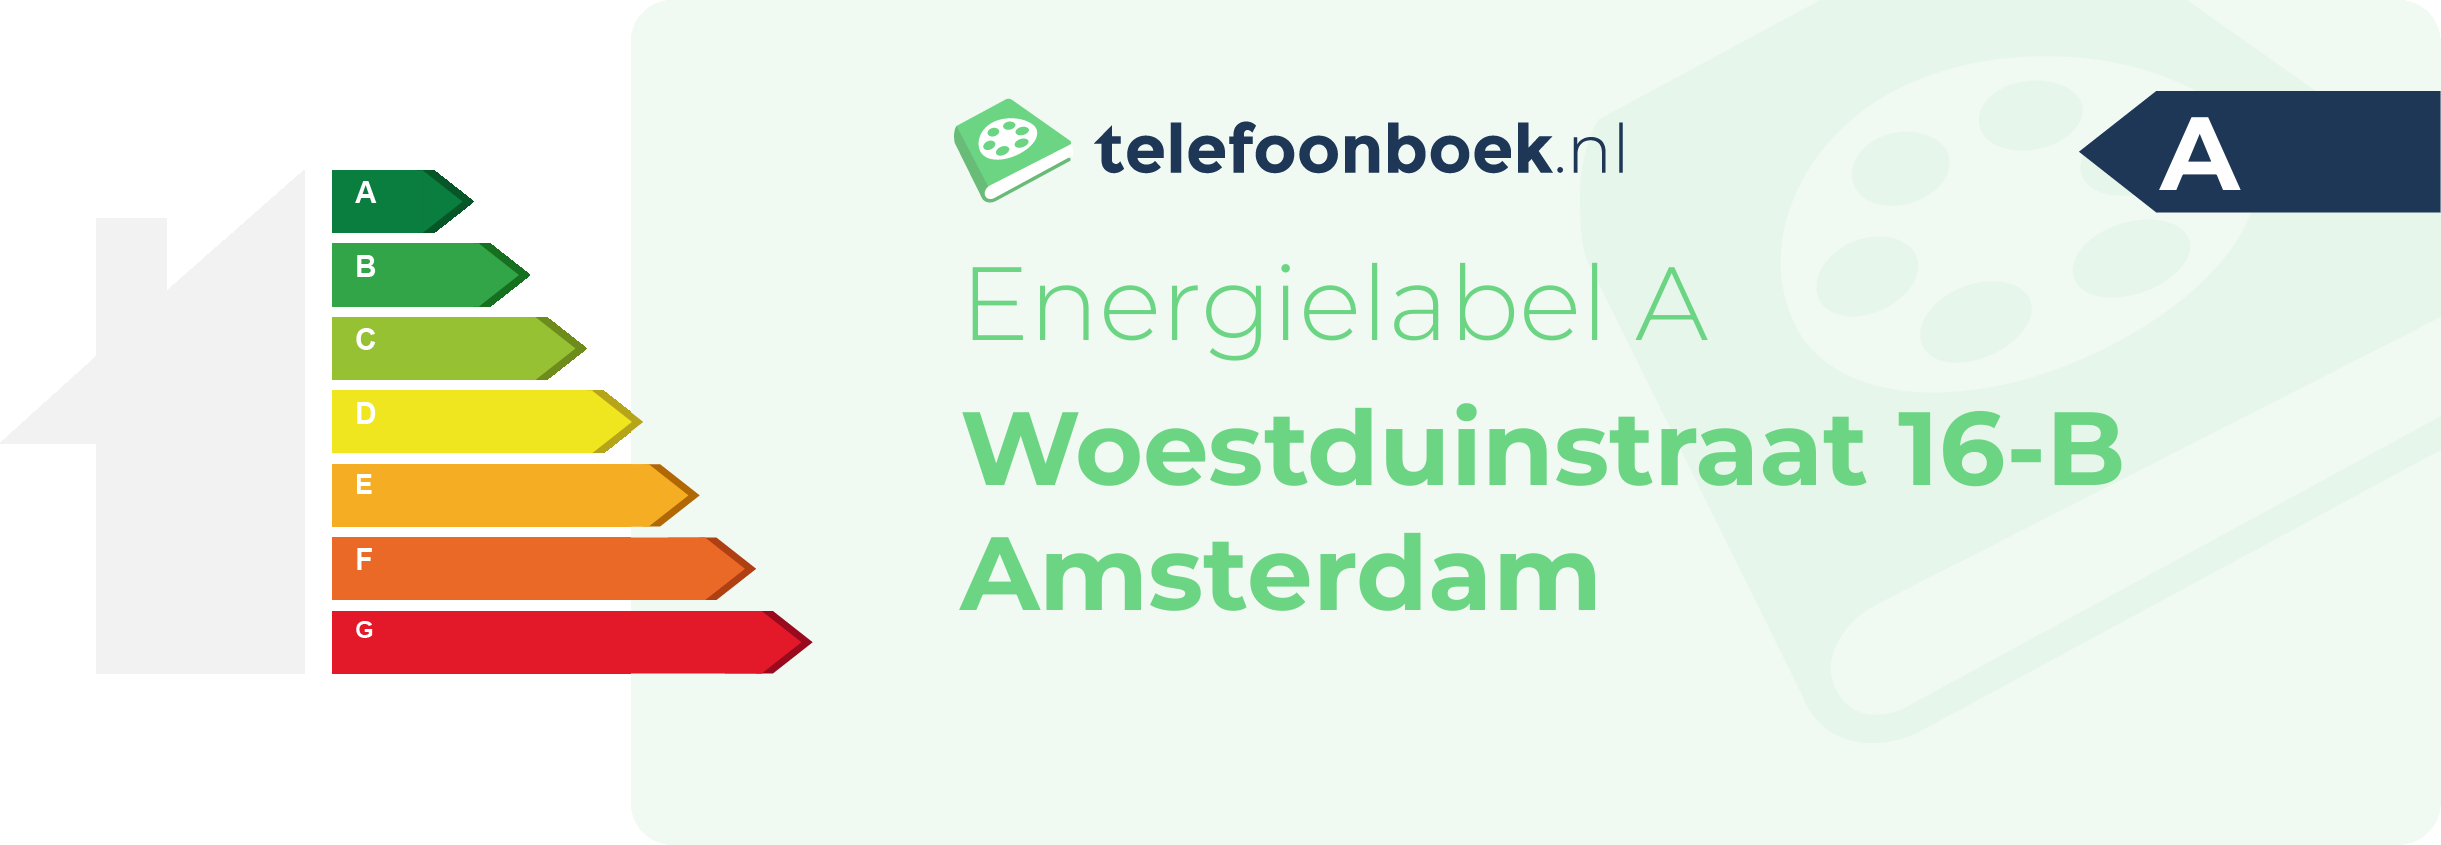 Energielabel Woestduinstraat 16-B Amsterdam